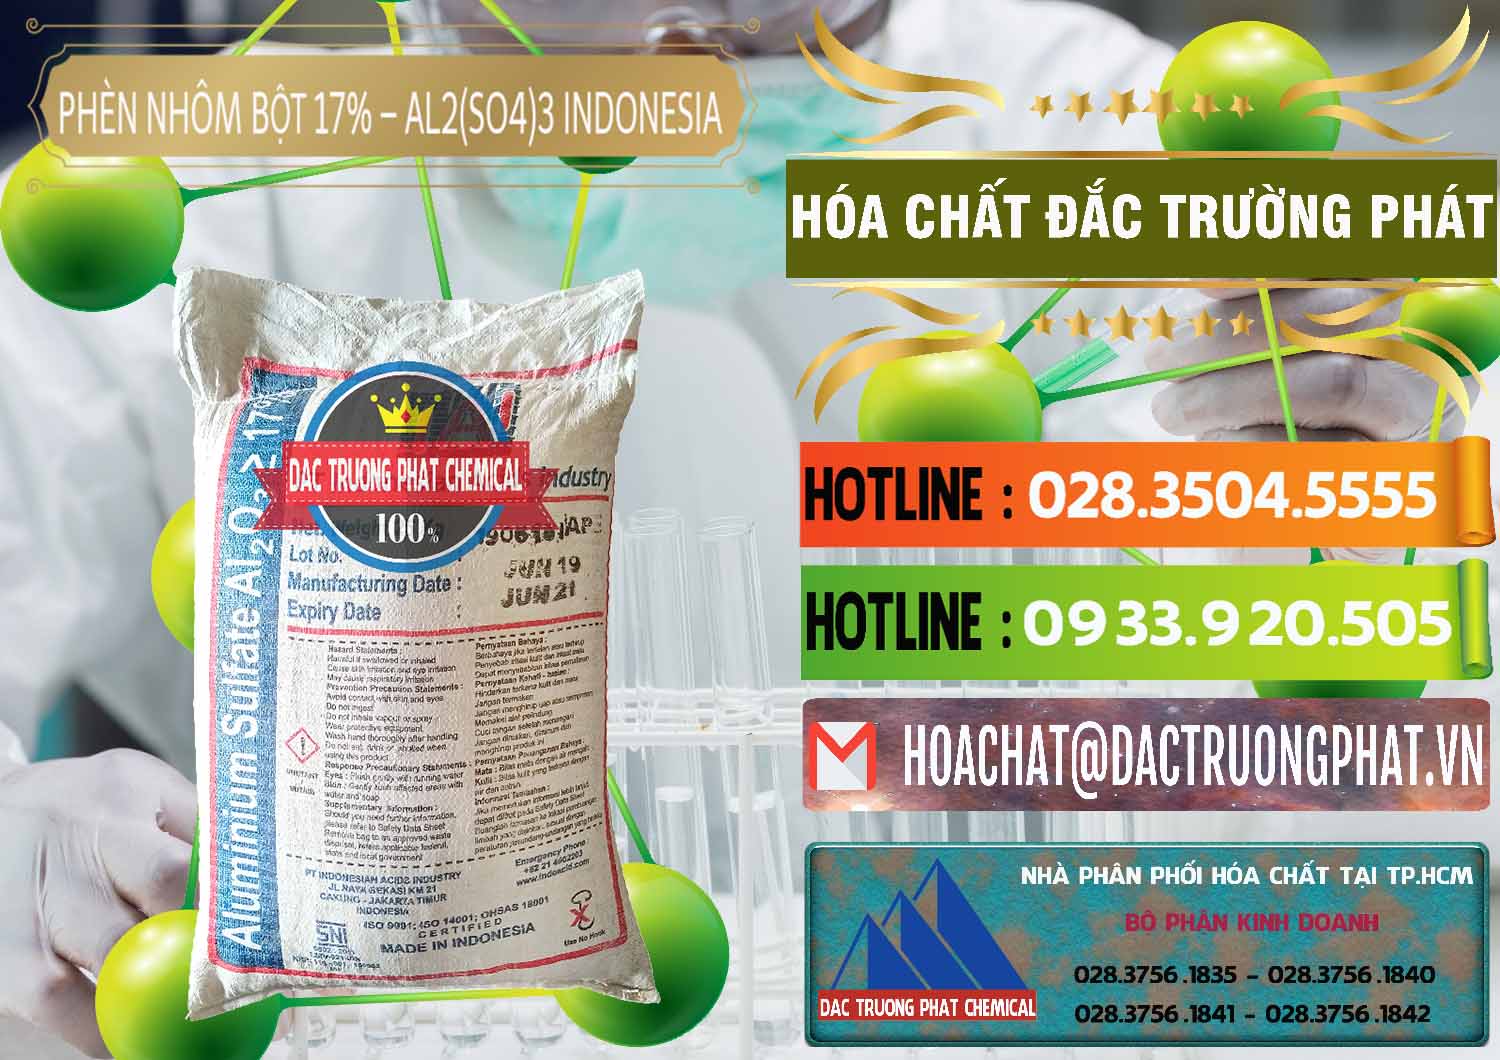 Công ty bán và cung ứng Phèn Nhôm Bột - Al2(SO4)3 17% bao 25kg Indonesia - 0114 - Cty kinh doanh ( phân phối ) hóa chất tại TP.HCM - cungcaphoachat.com.vn